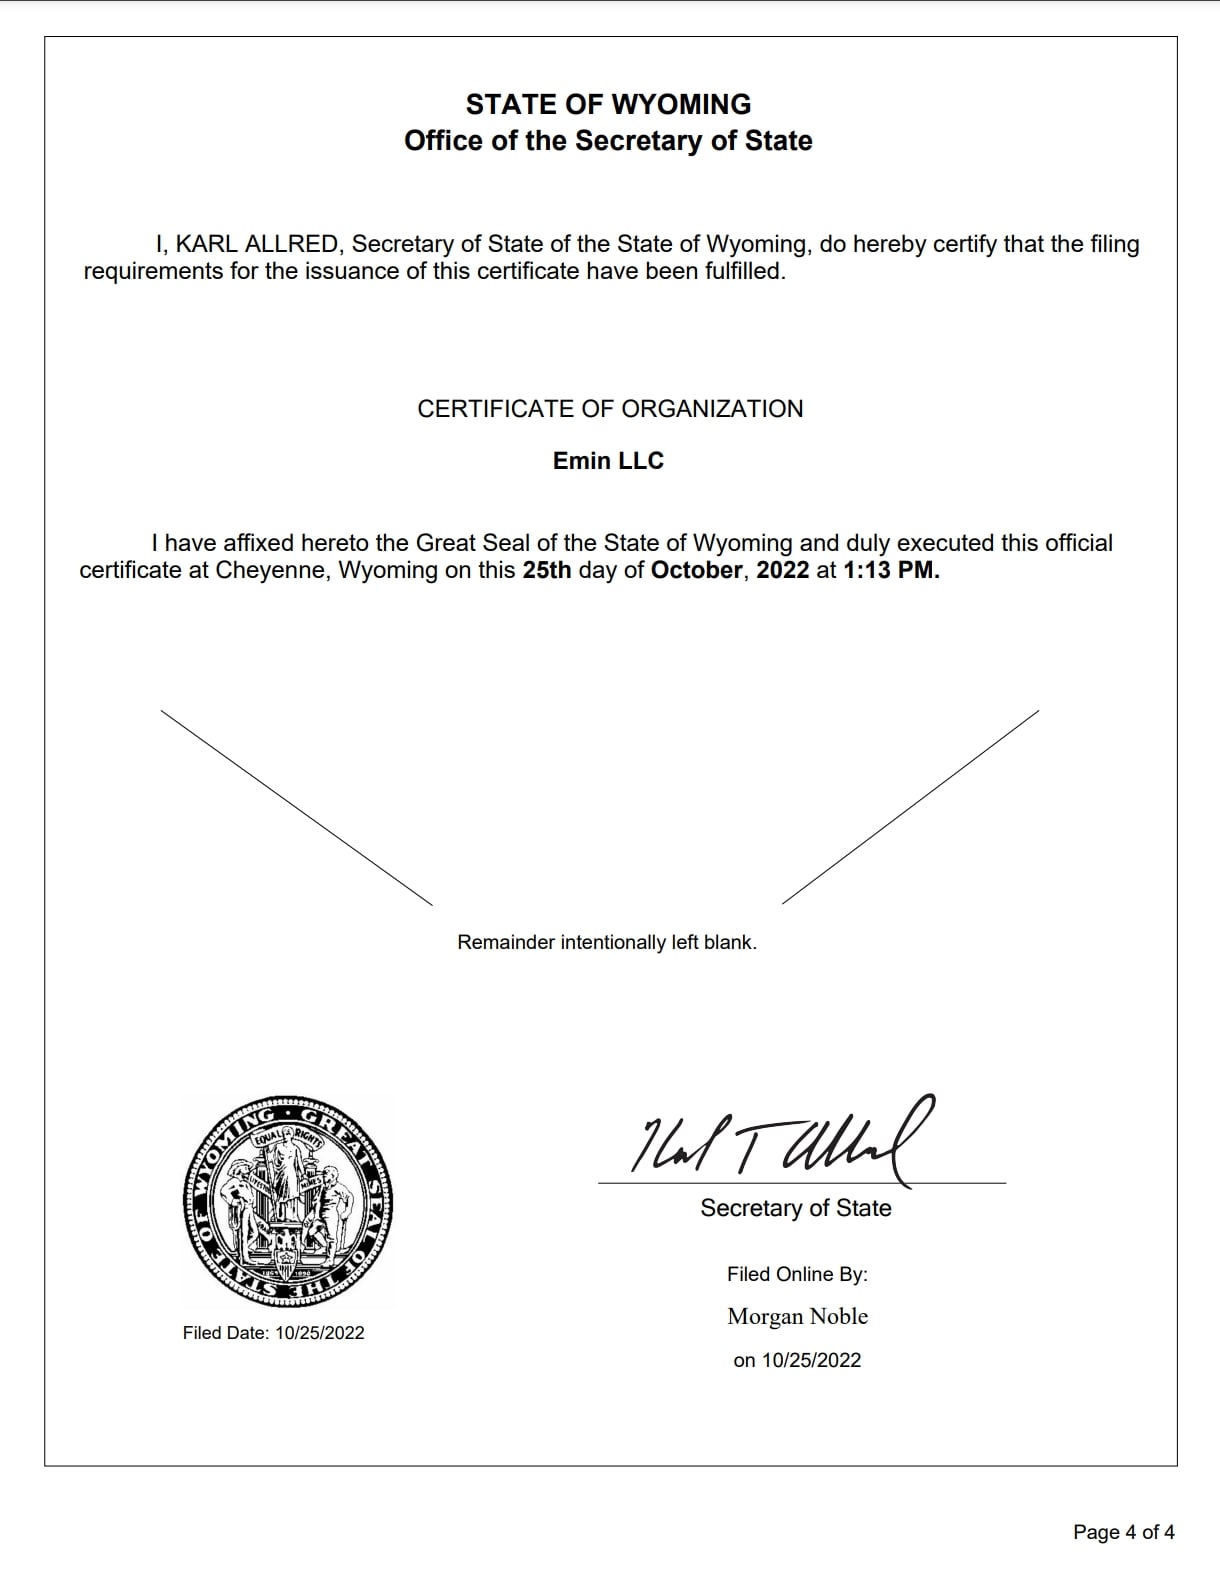 Emin LLC - Certificate Of Organization